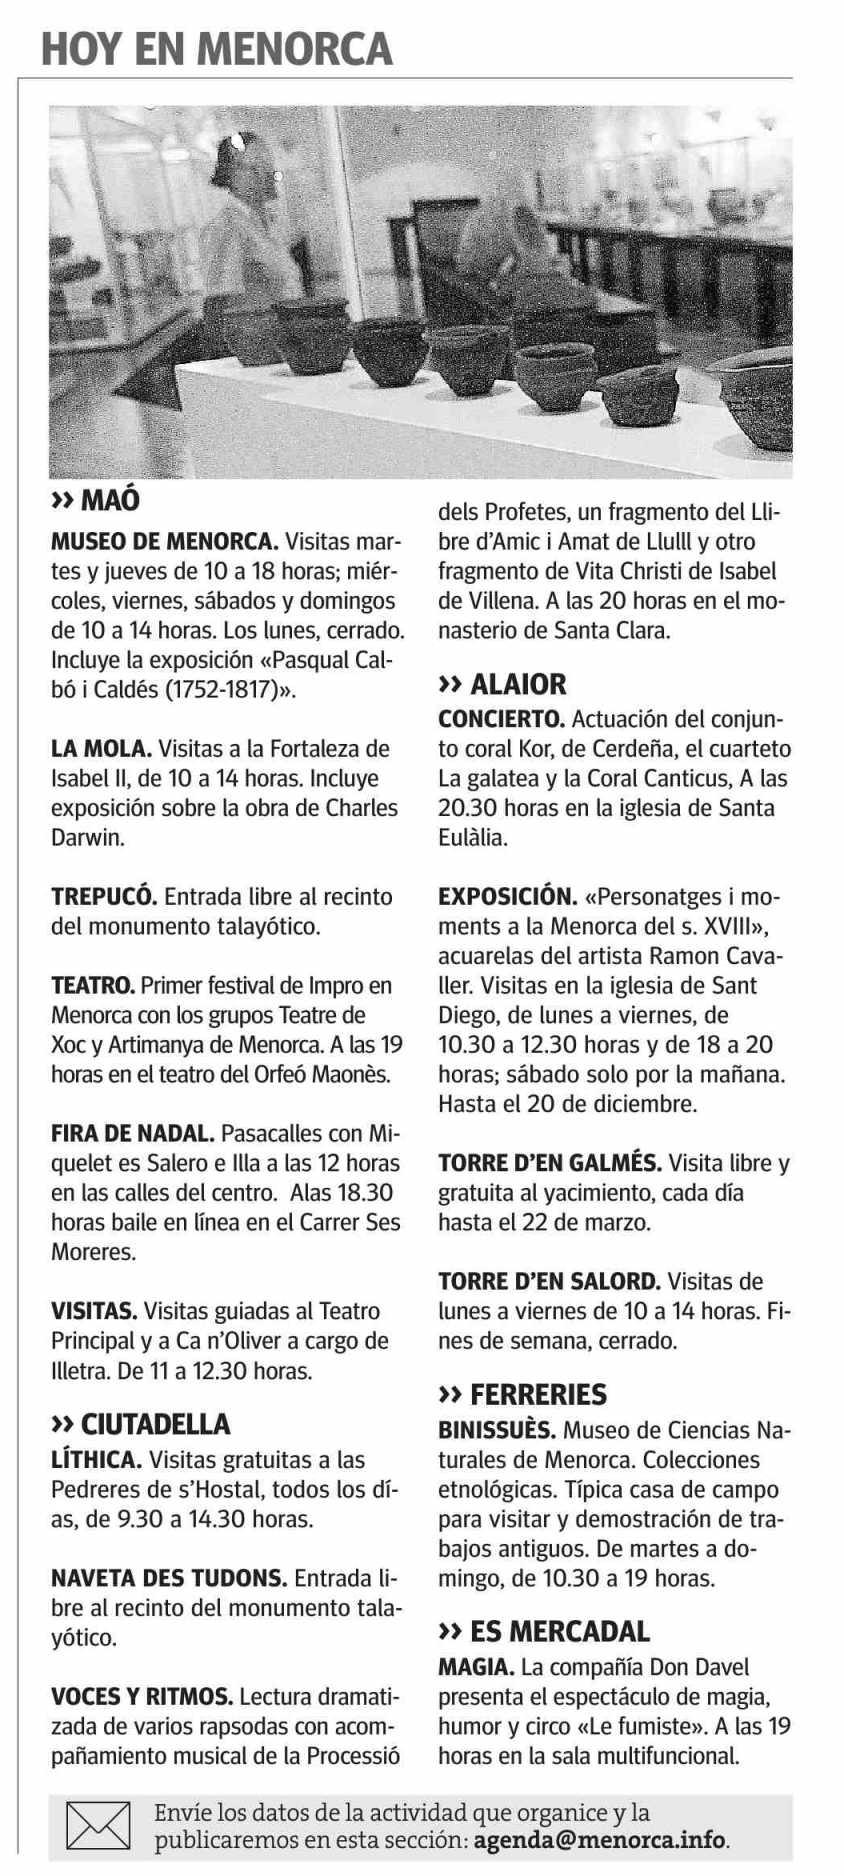 Menorca Prensa: Tirada: Difusión: Diaria 4.761 Ejemplares 4.